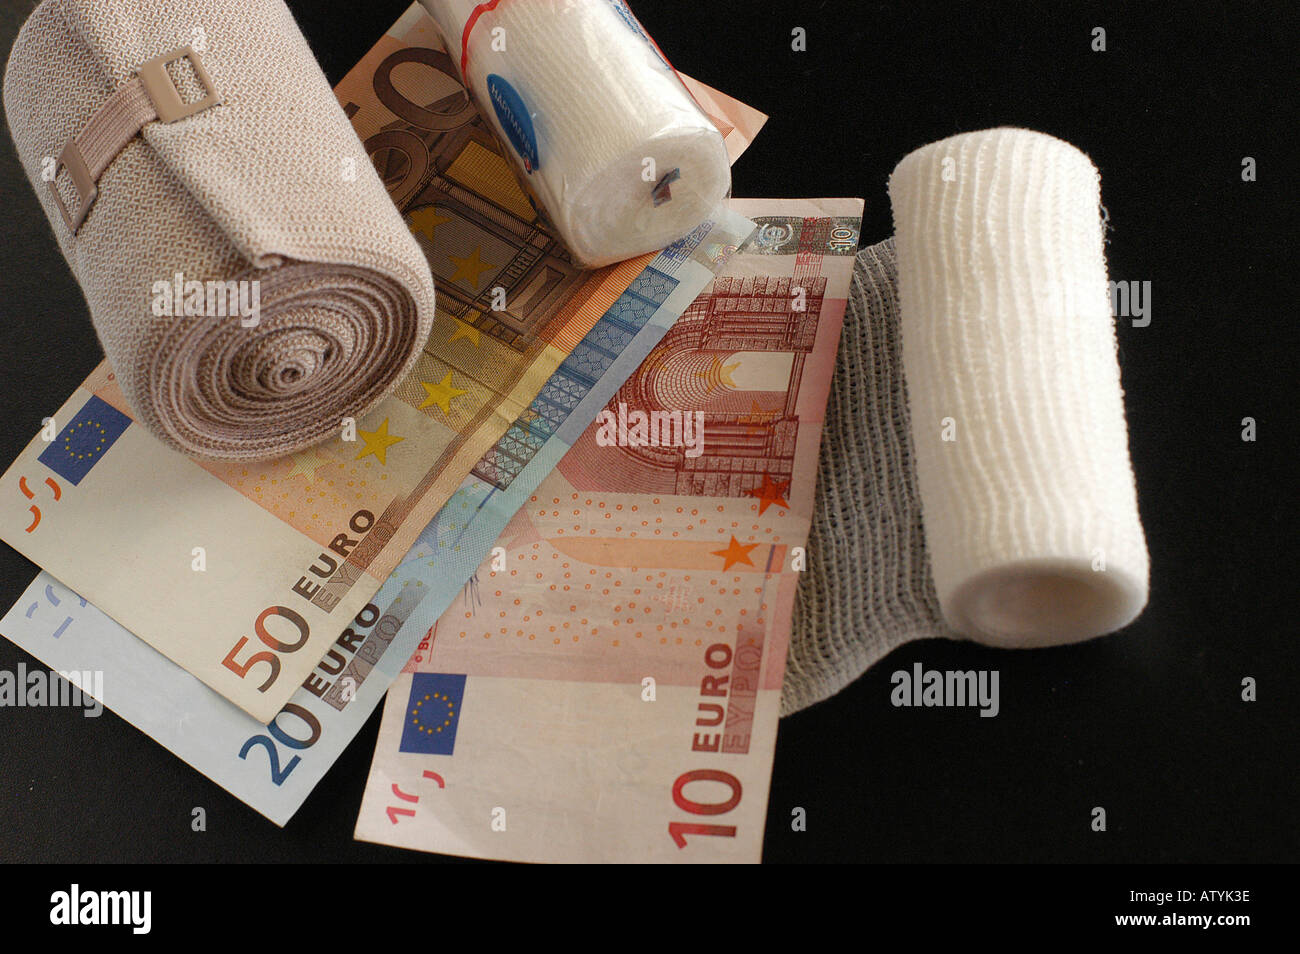 Verband Verbaende Geldscheine Euro Praxisgebuehr Kostenexplosion Krankheit gesund Gesundheit krank Krankenversicherung Banque D'Images